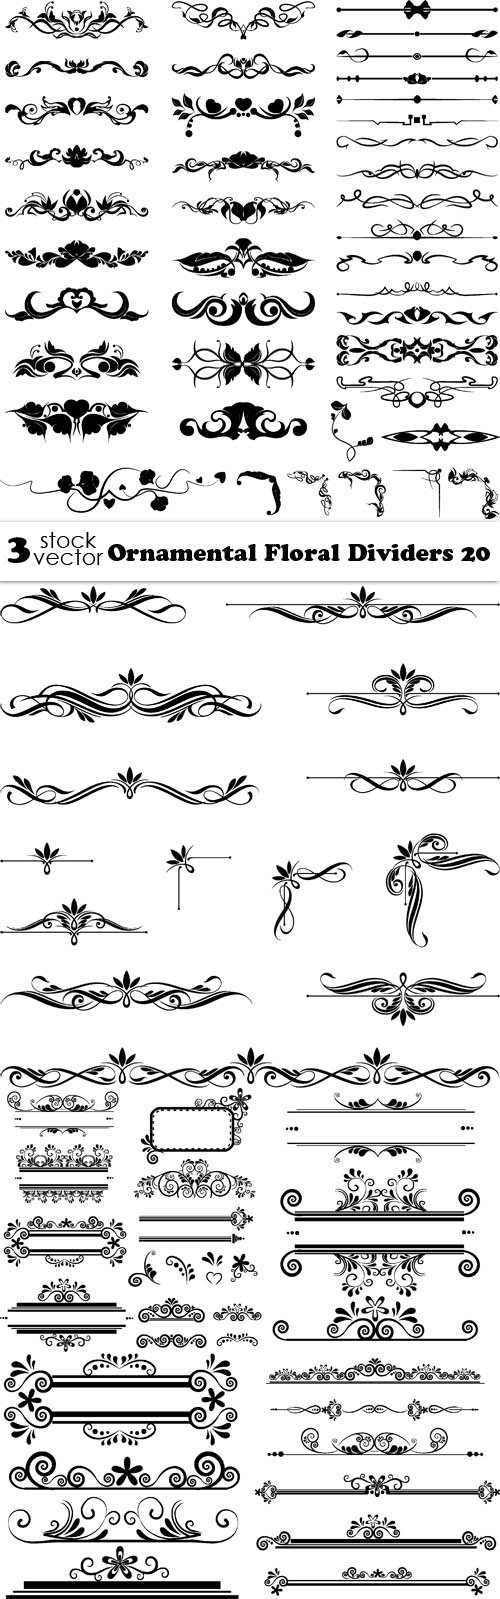 Vectors - Ornamental Floral Dividers 20